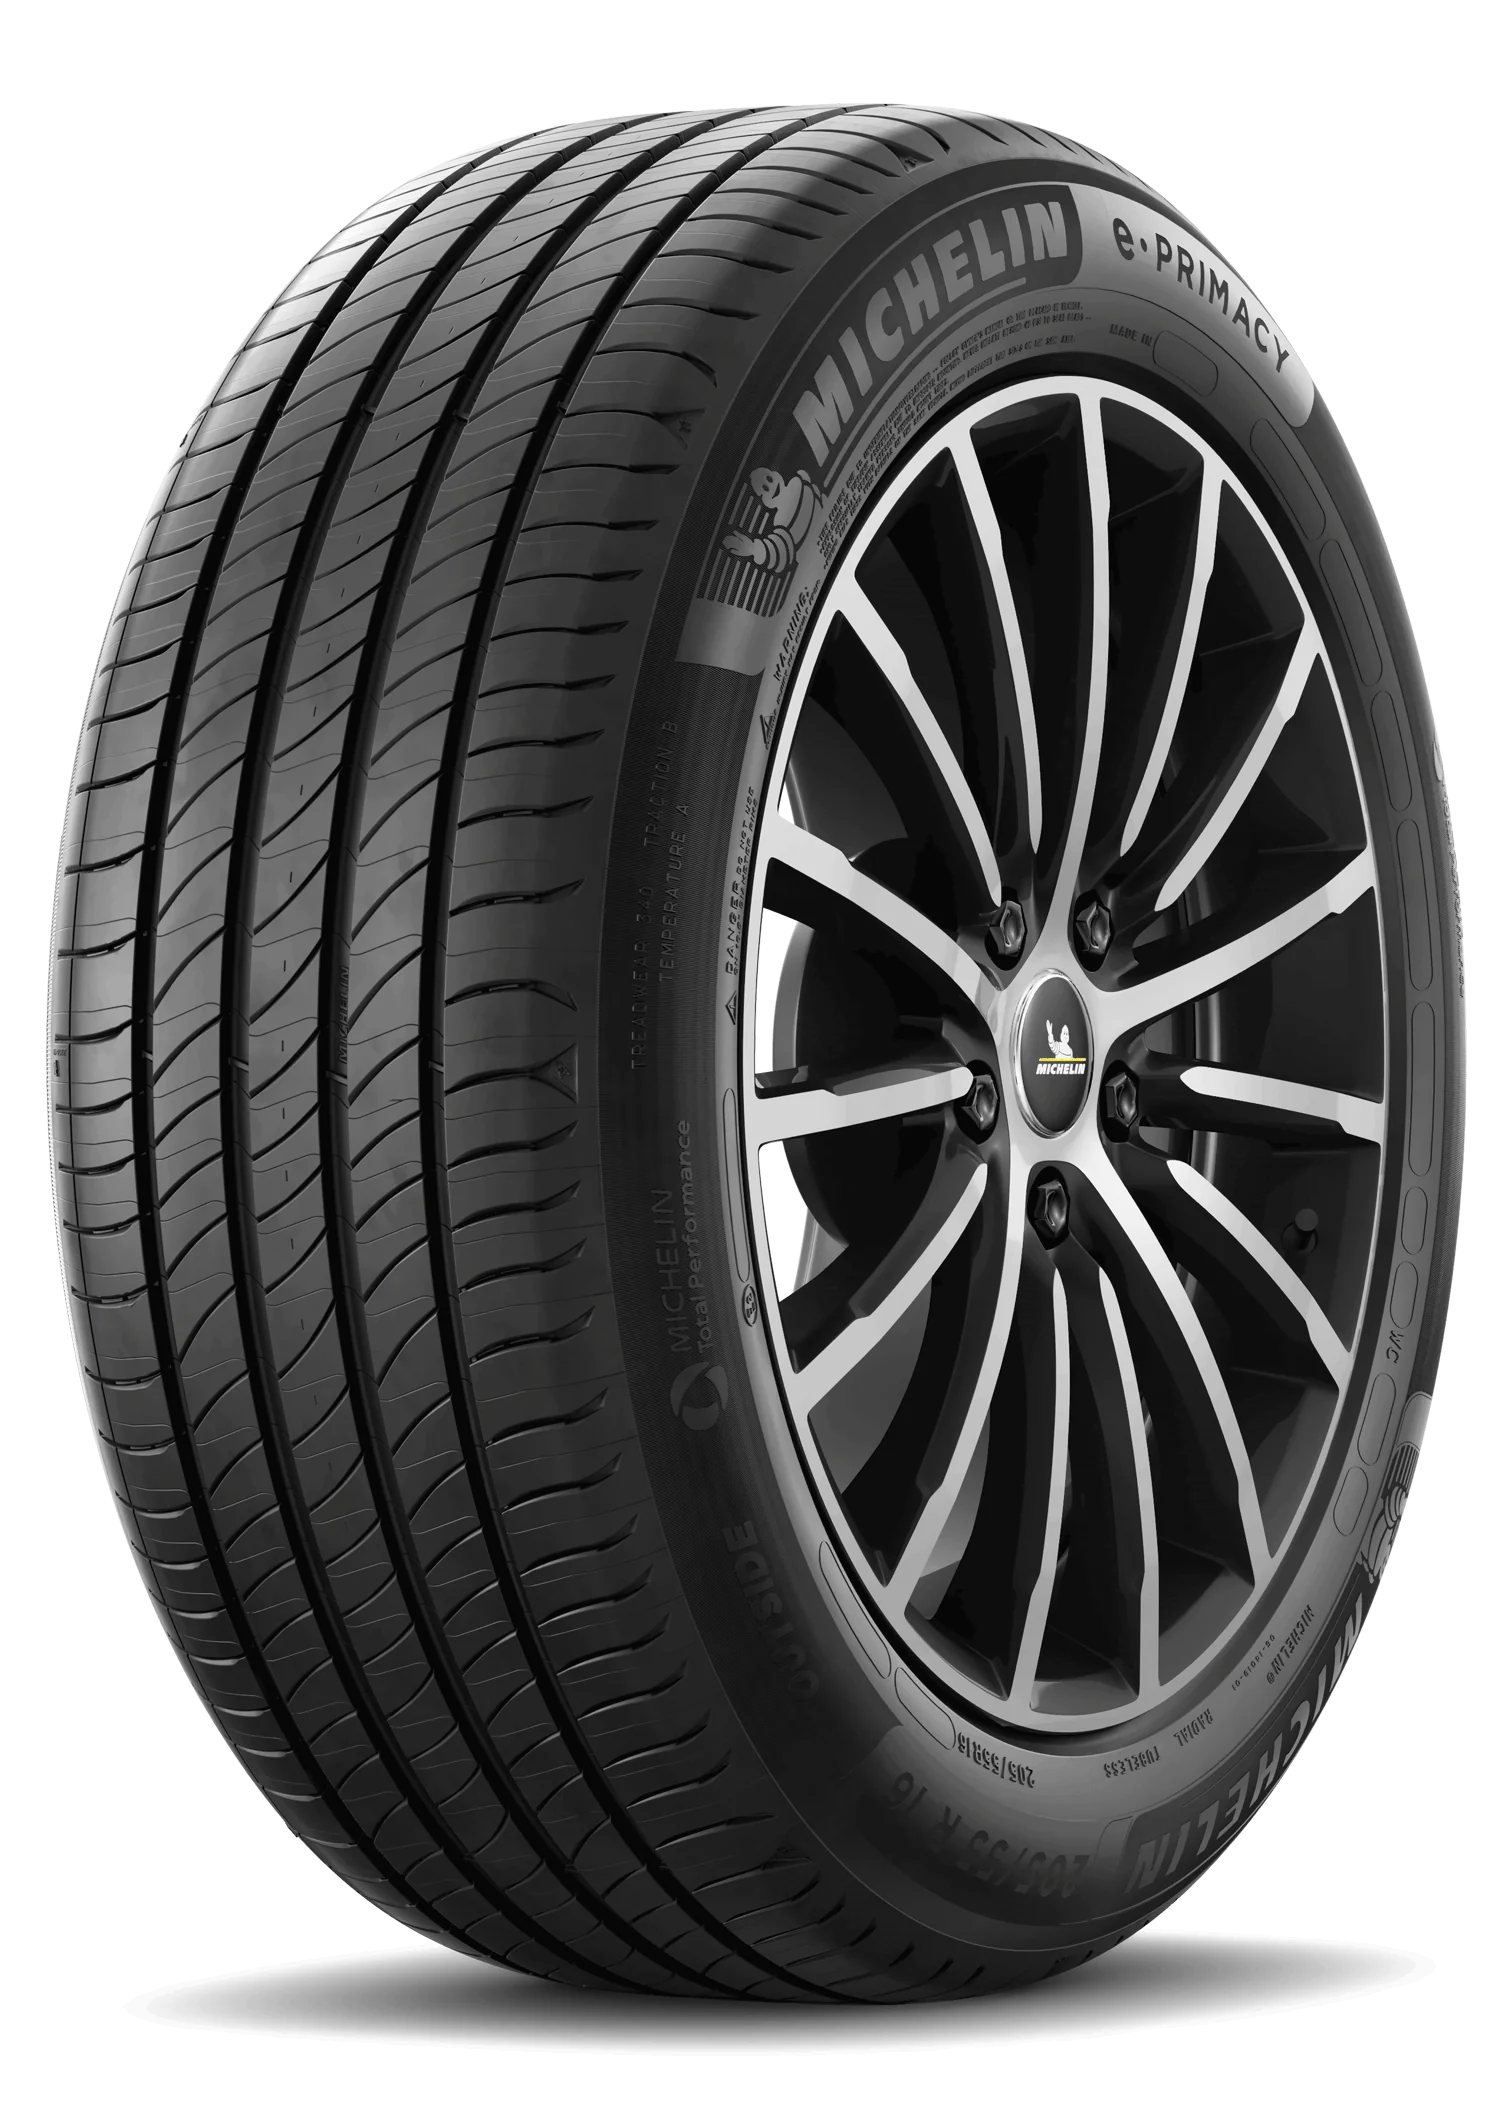 Michelin Michelin 245/55 R17 106H E PRIMACY XL pneumatici nuovi Estivo 